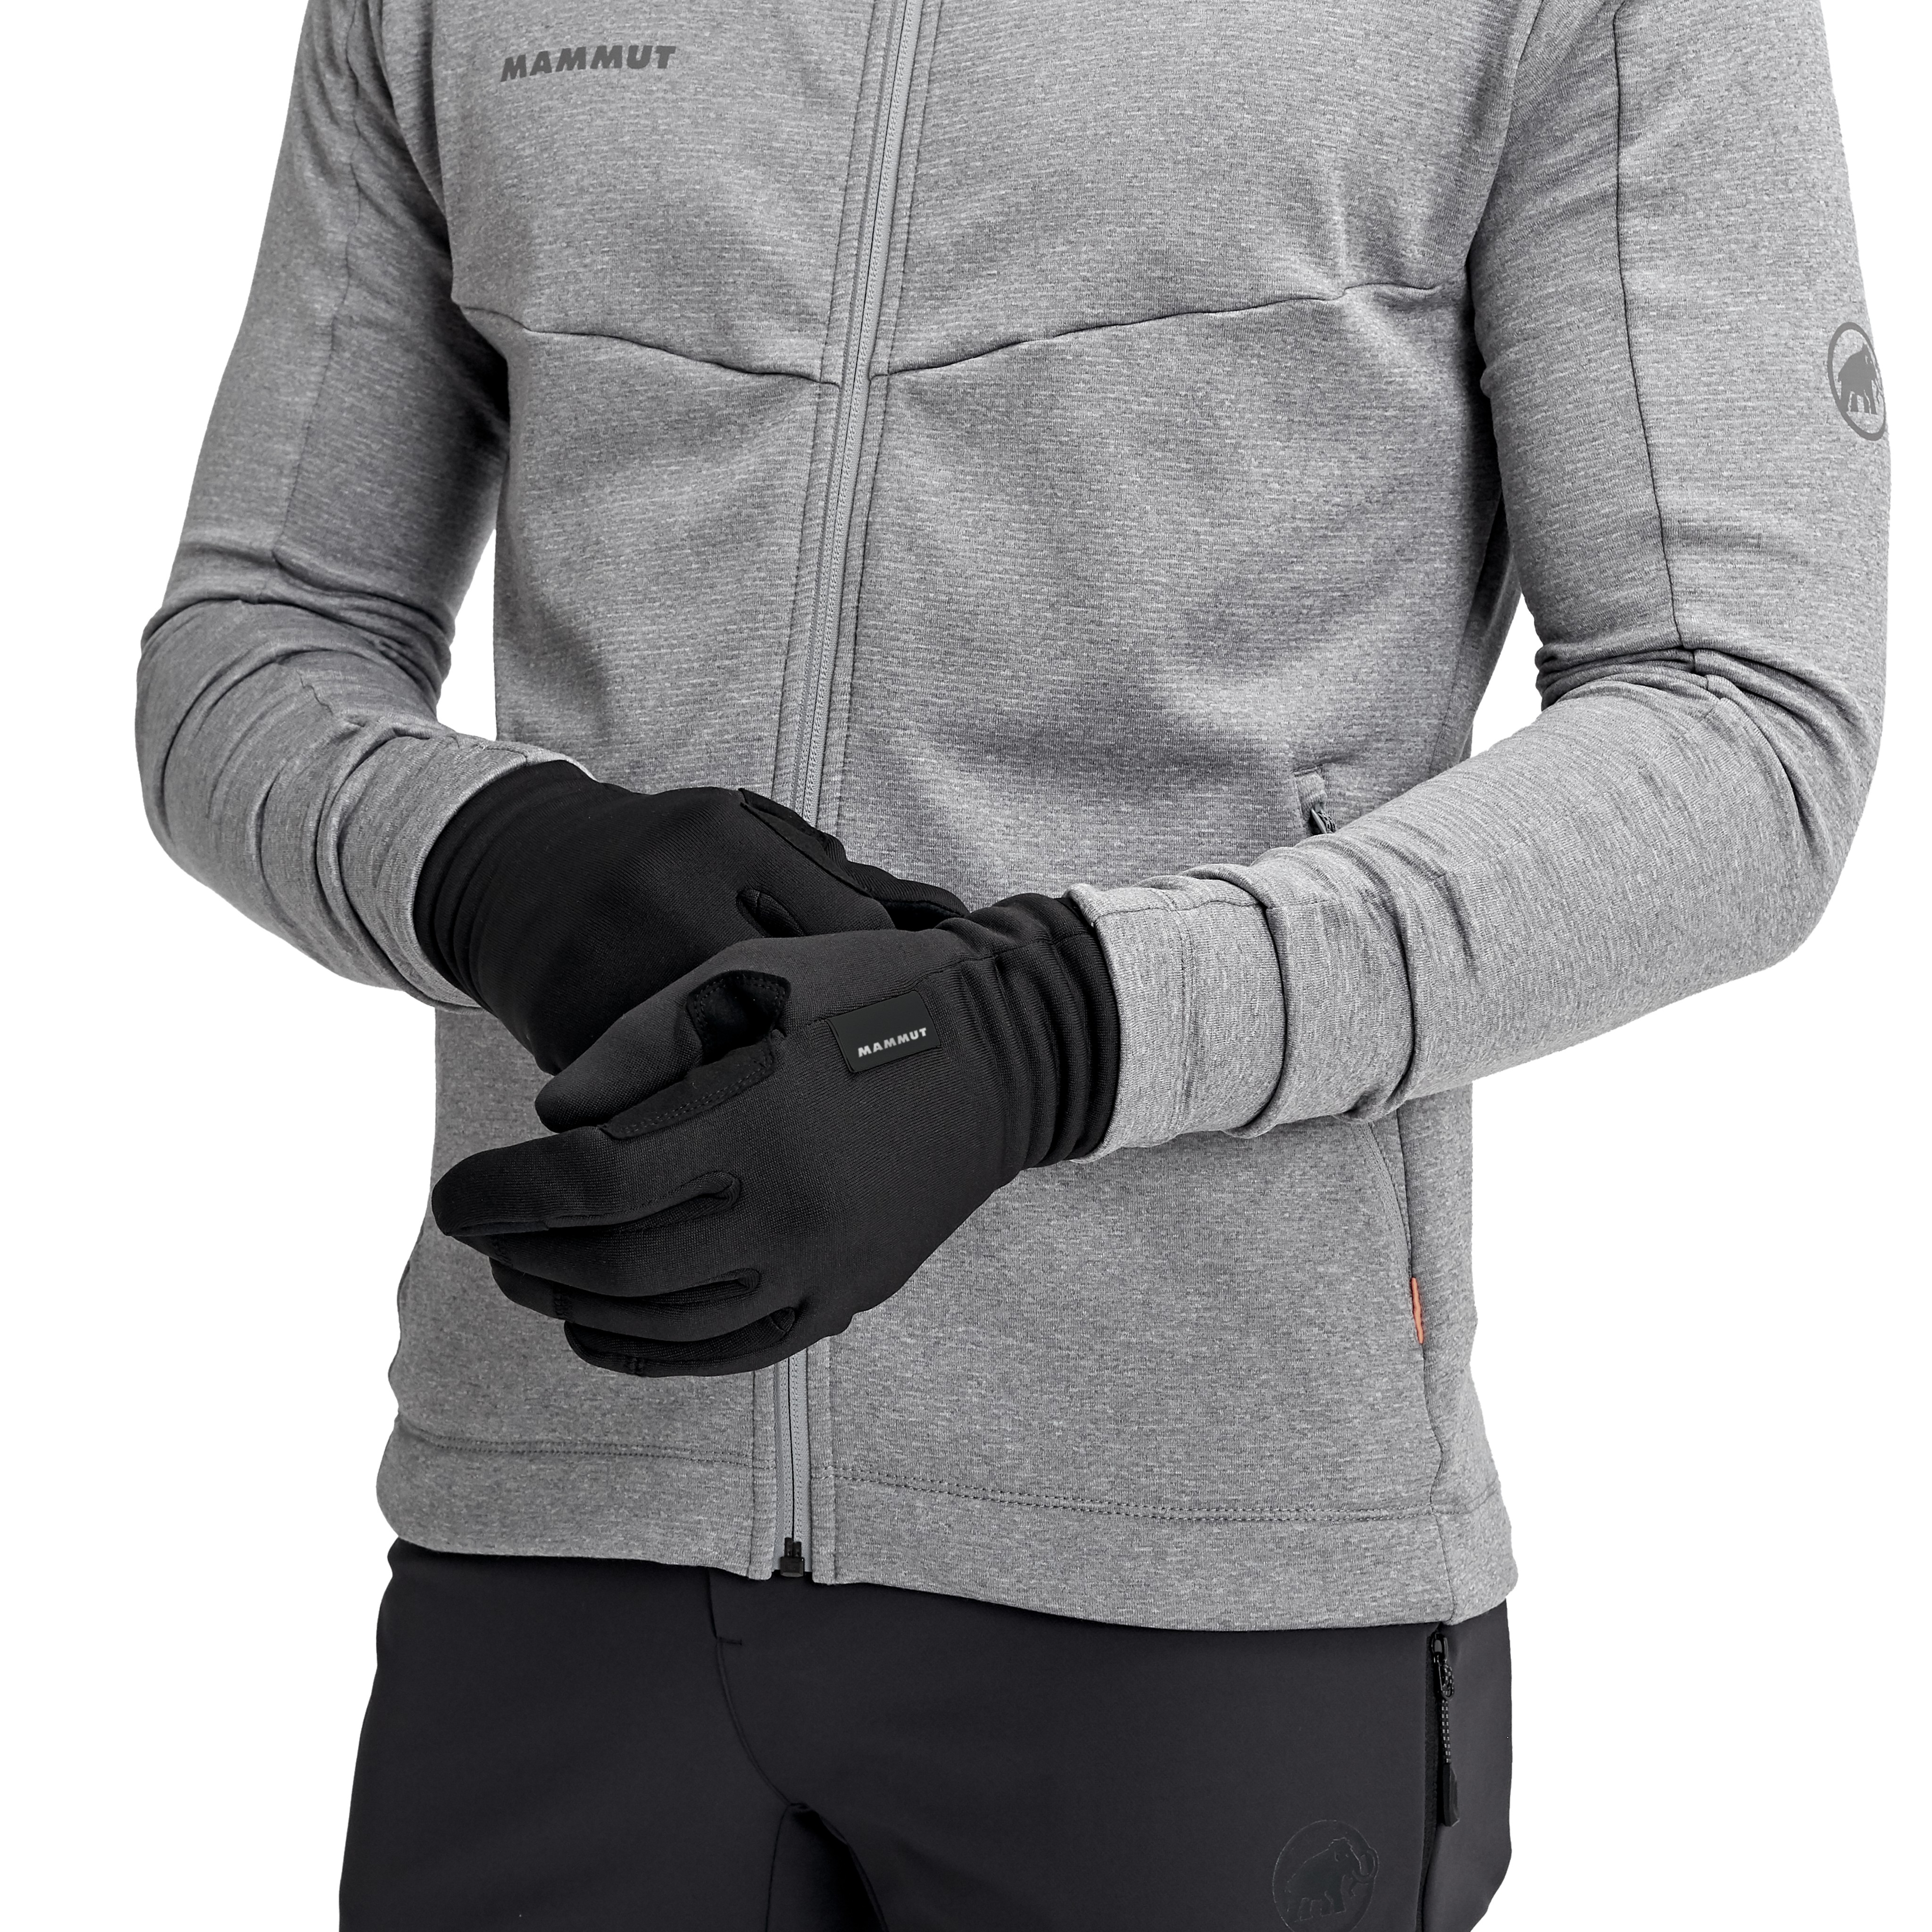 Fleece Pro Glove product image